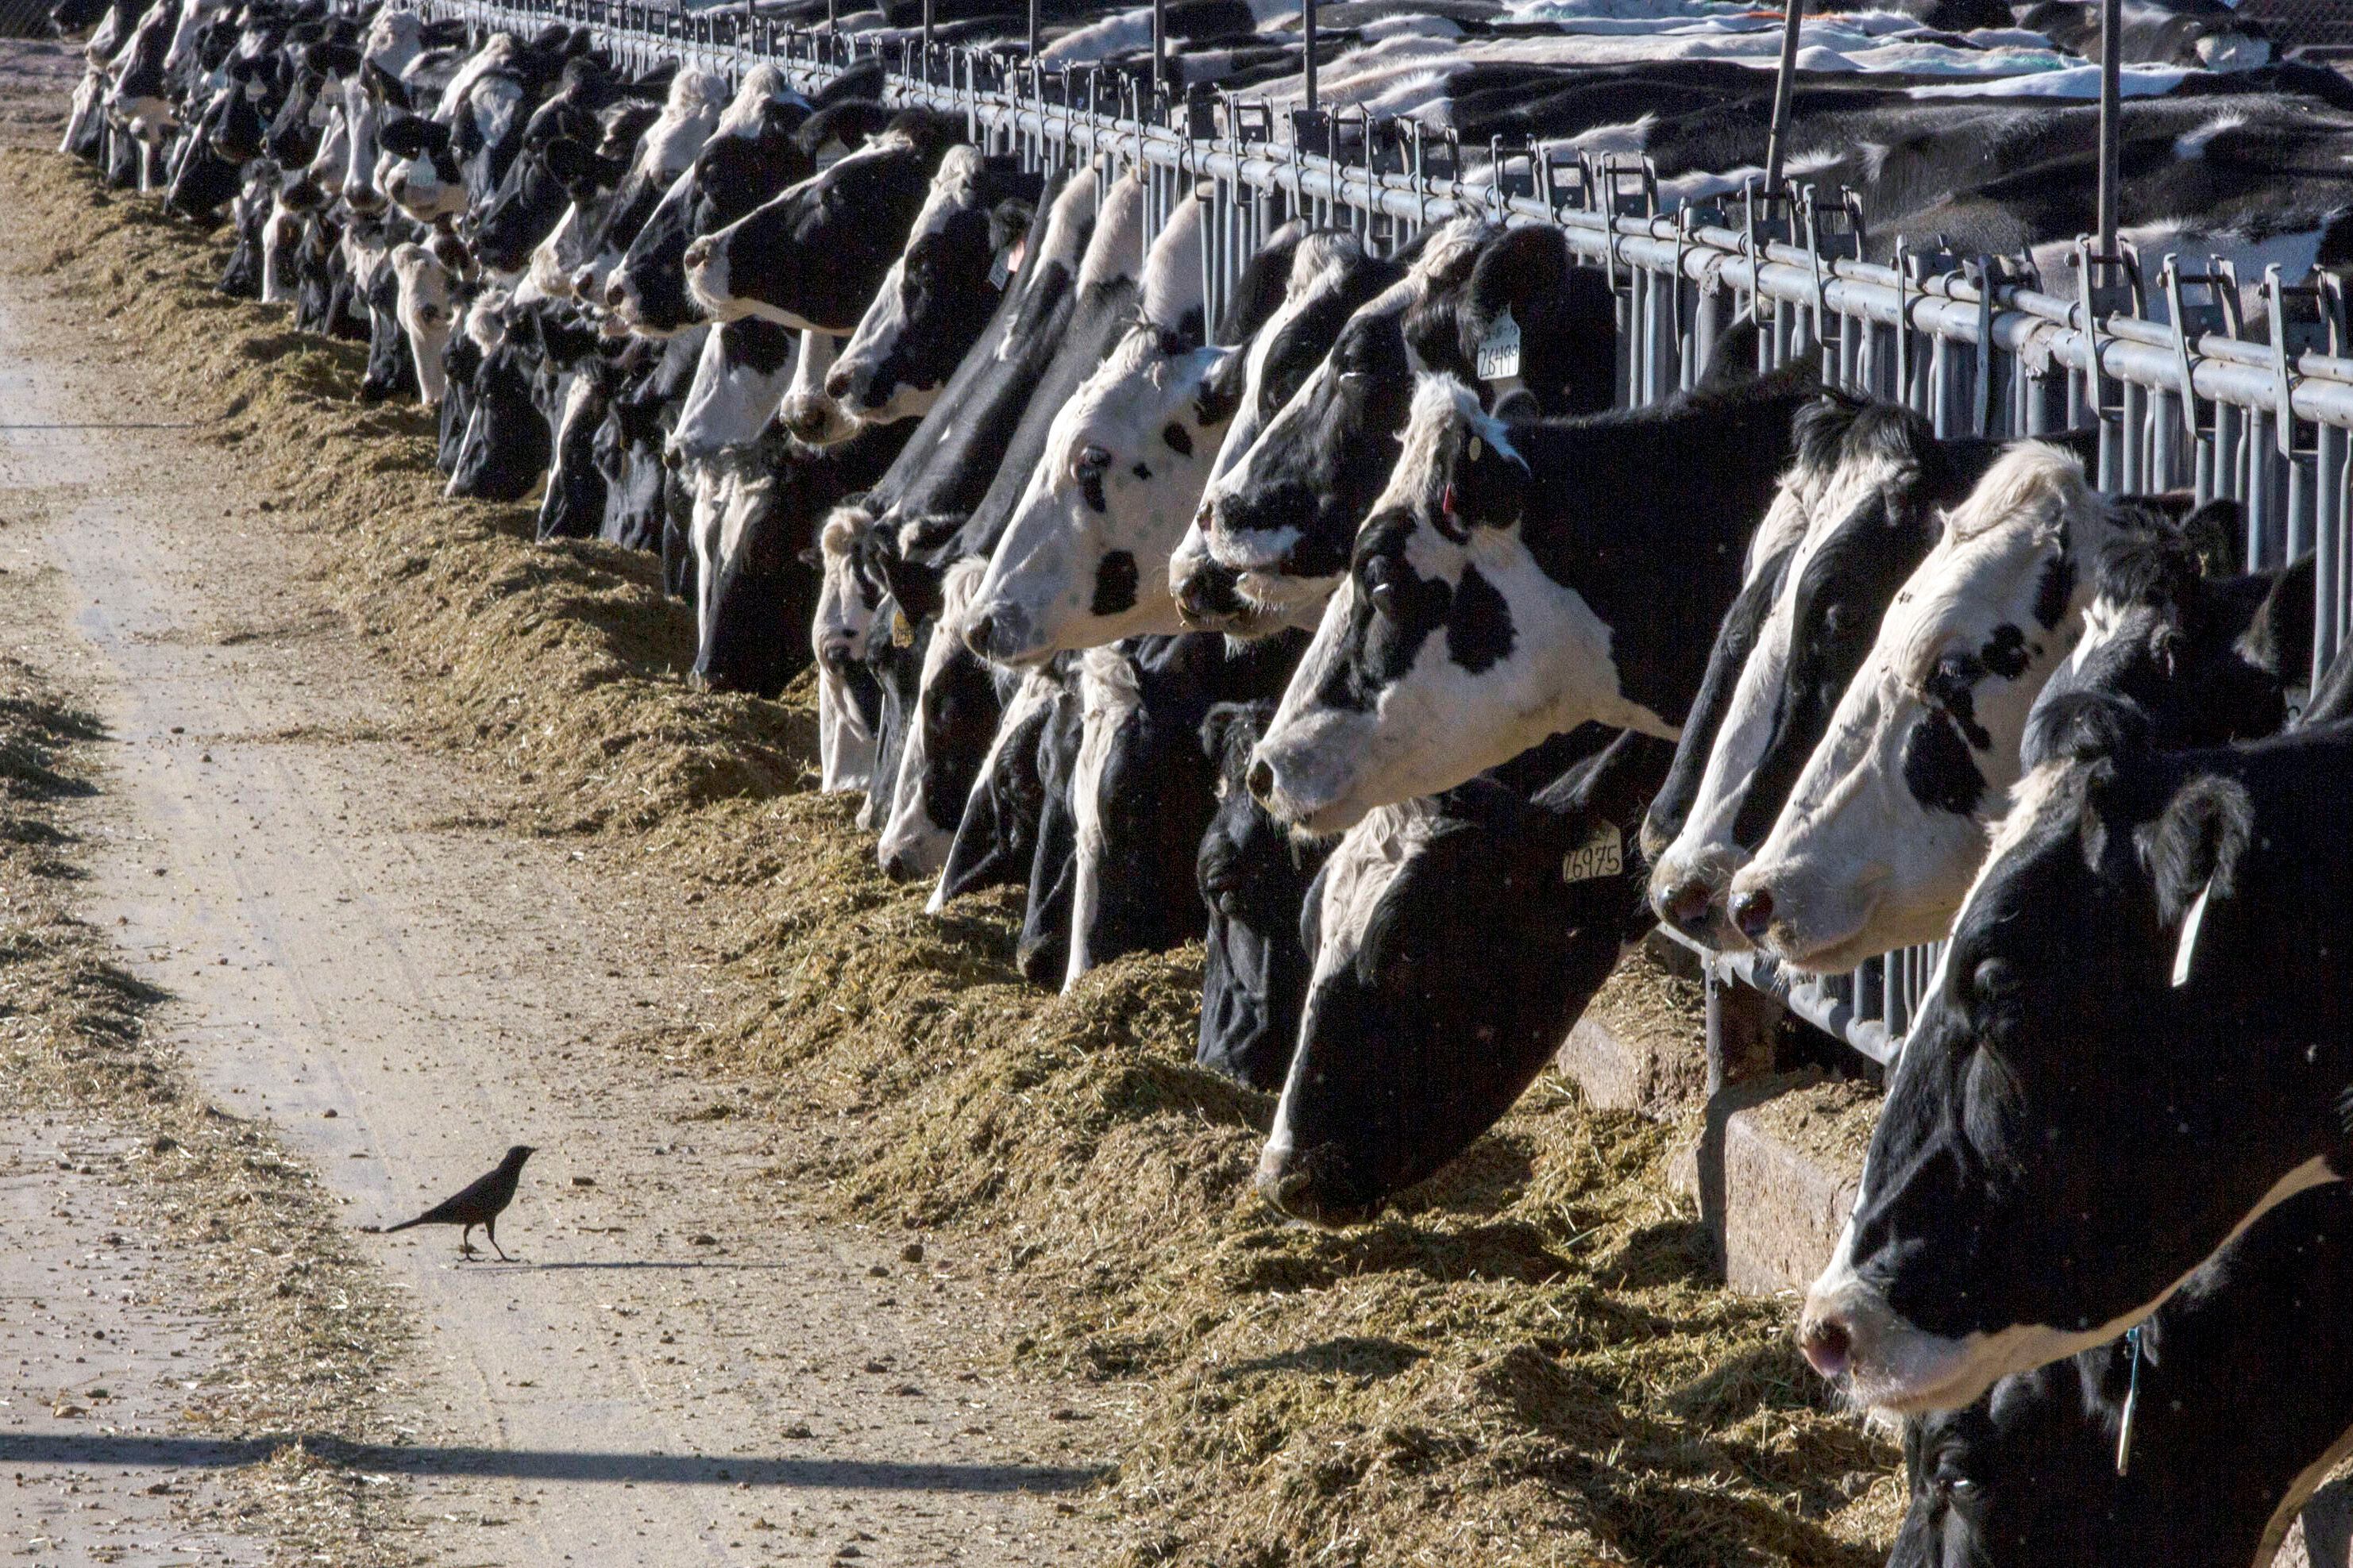 la preocupación de los científicos tras el brote de gripe aviar entre el ganado: “estamos en un precipicio”